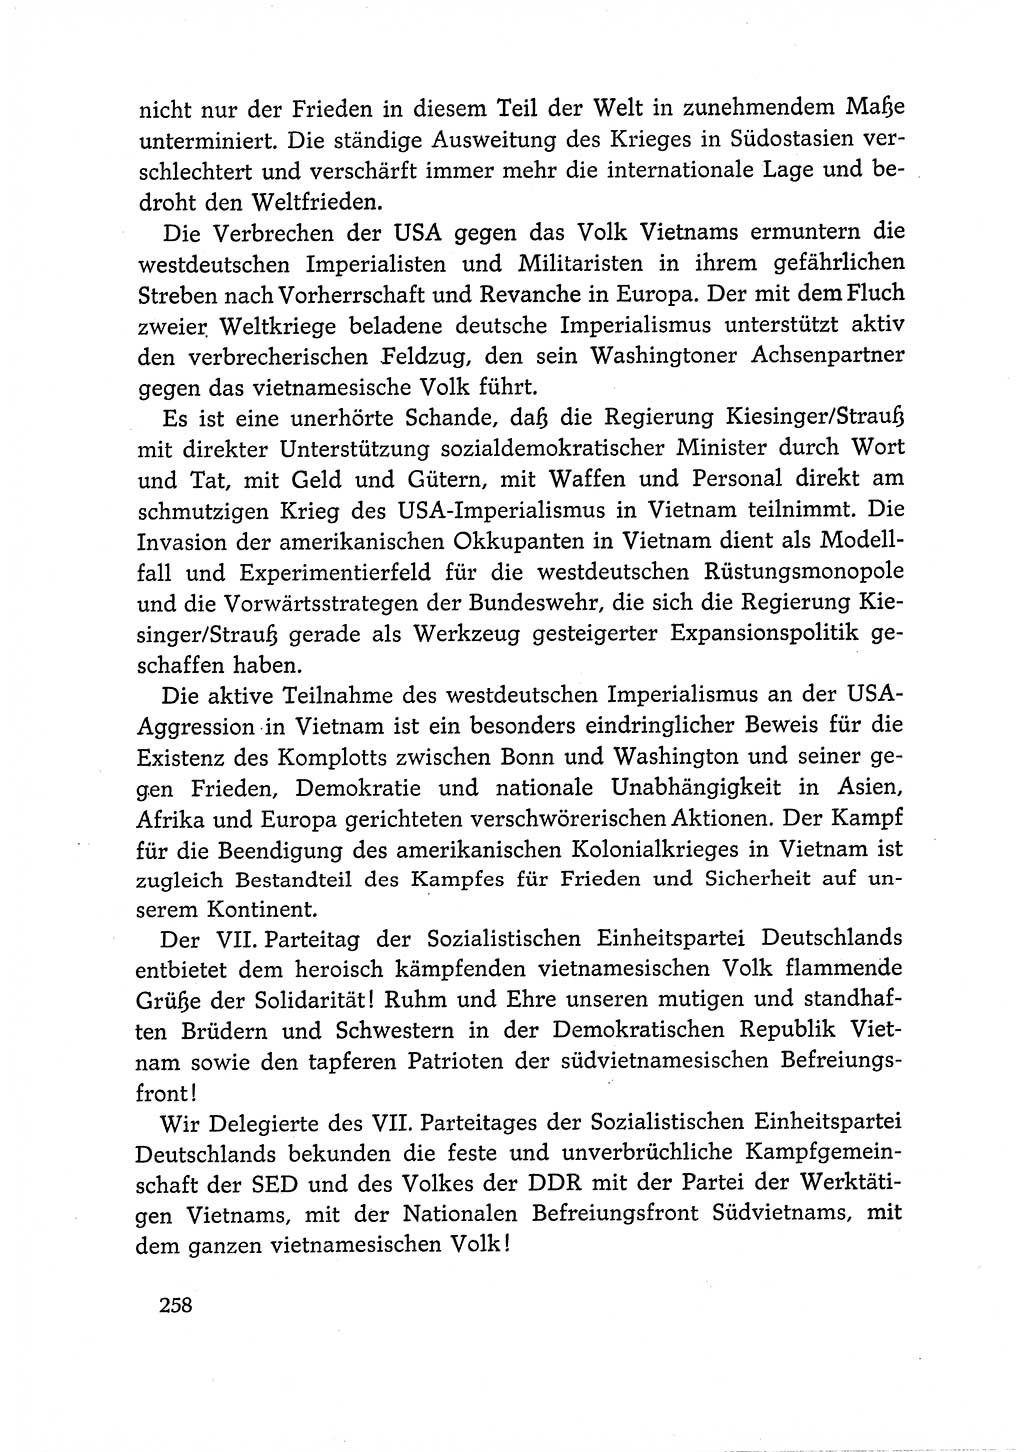 Dokumente der Sozialistischen Einheitspartei Deutschlands (SED) [Deutsche Demokratische Republik (DDR)] 1966-1967, Seite 258 (Dok. SED DDR 1966-1967, S. 258)